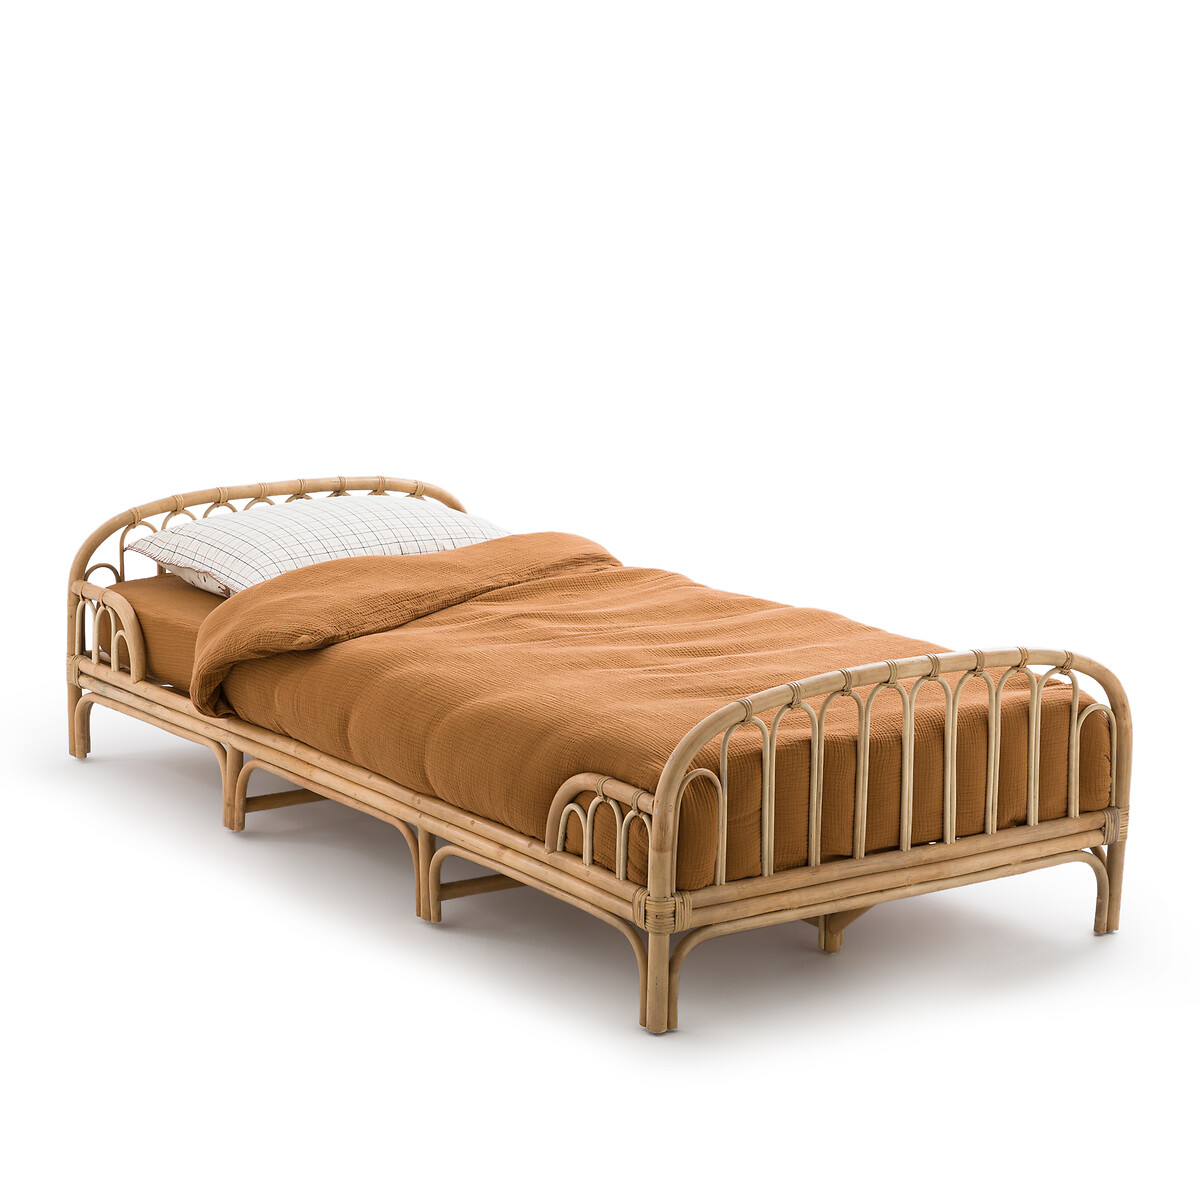  Кровать детская из ротанга Albin 90 x 190 см бежевый